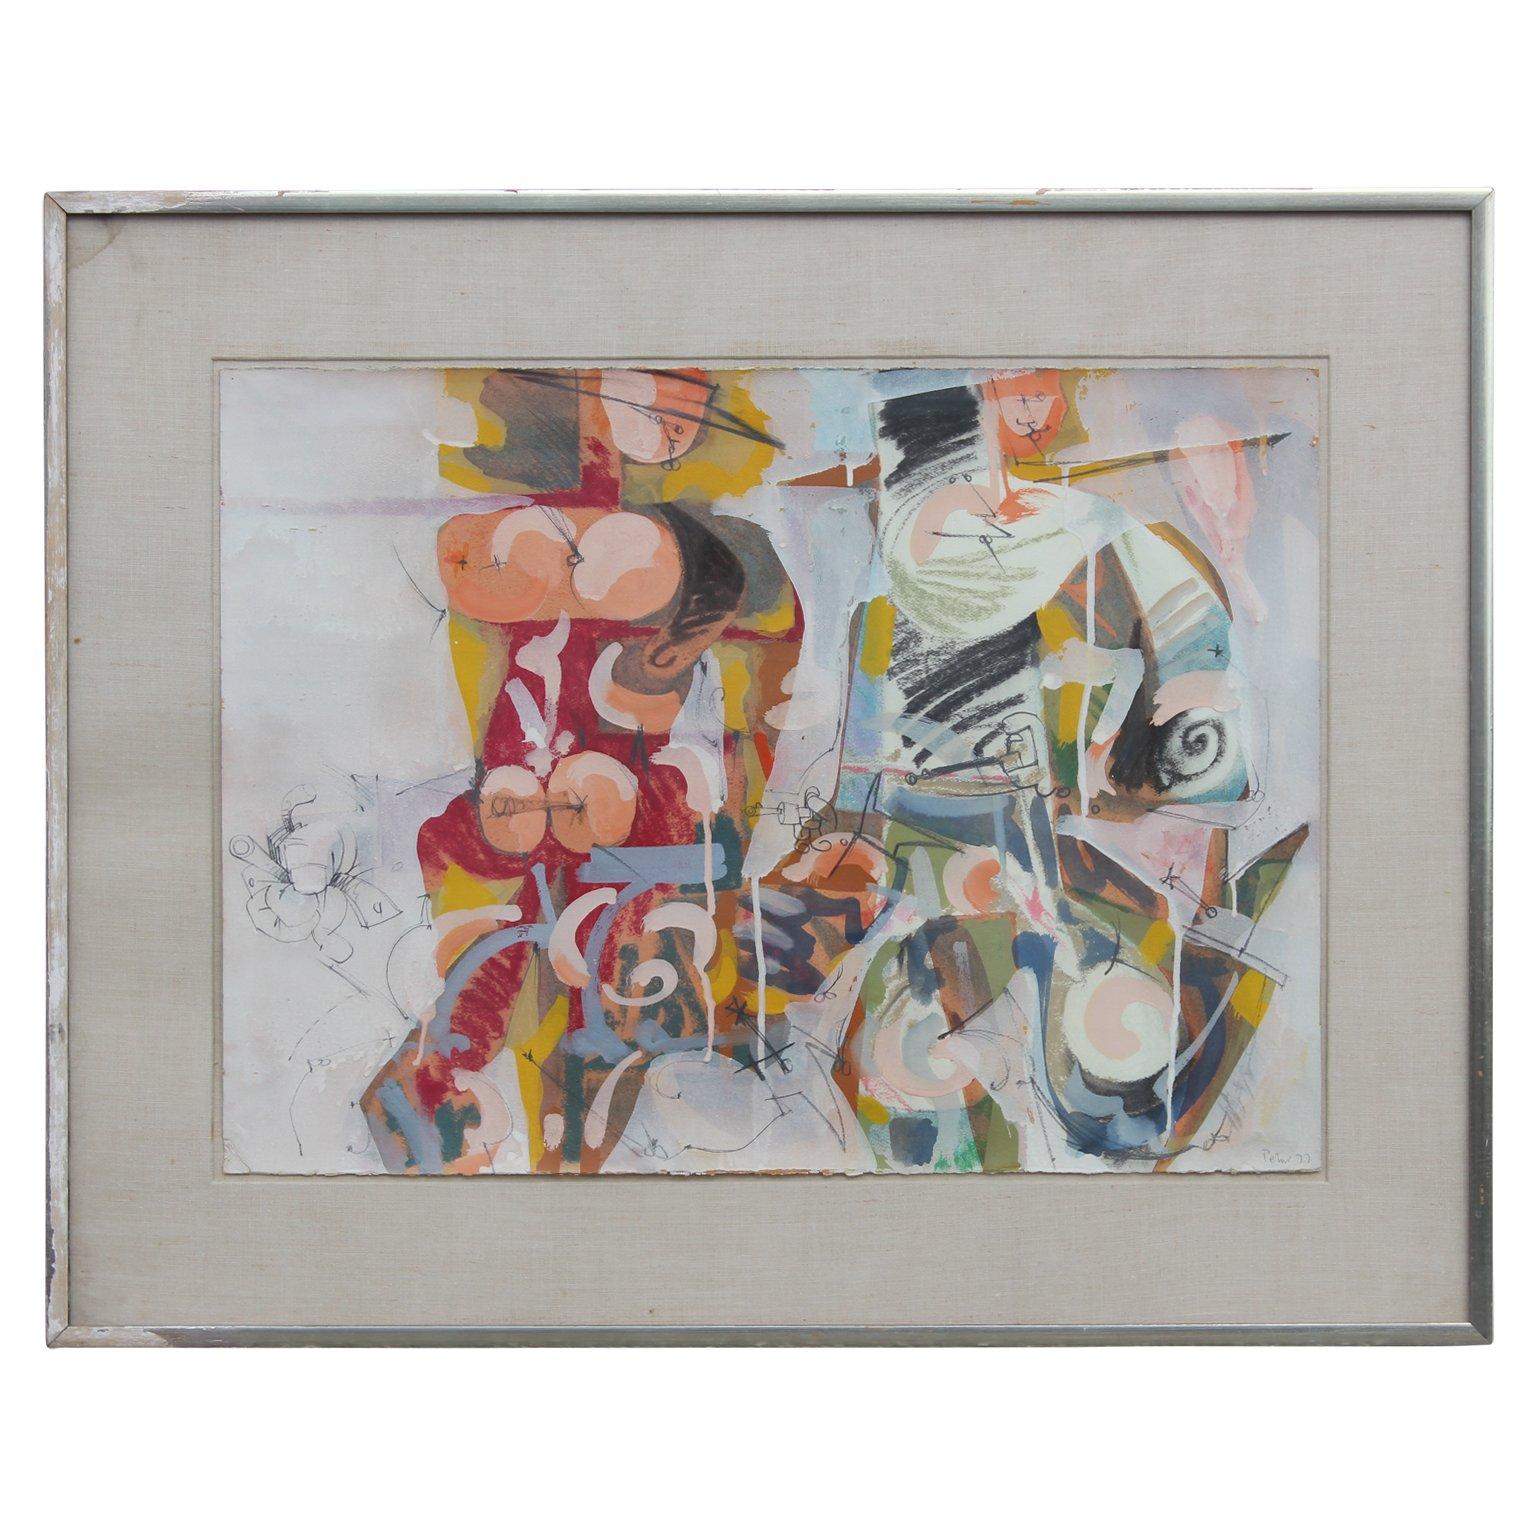 Abstrakt-expressionistische Figuren im Stil von Willem de Kooning  